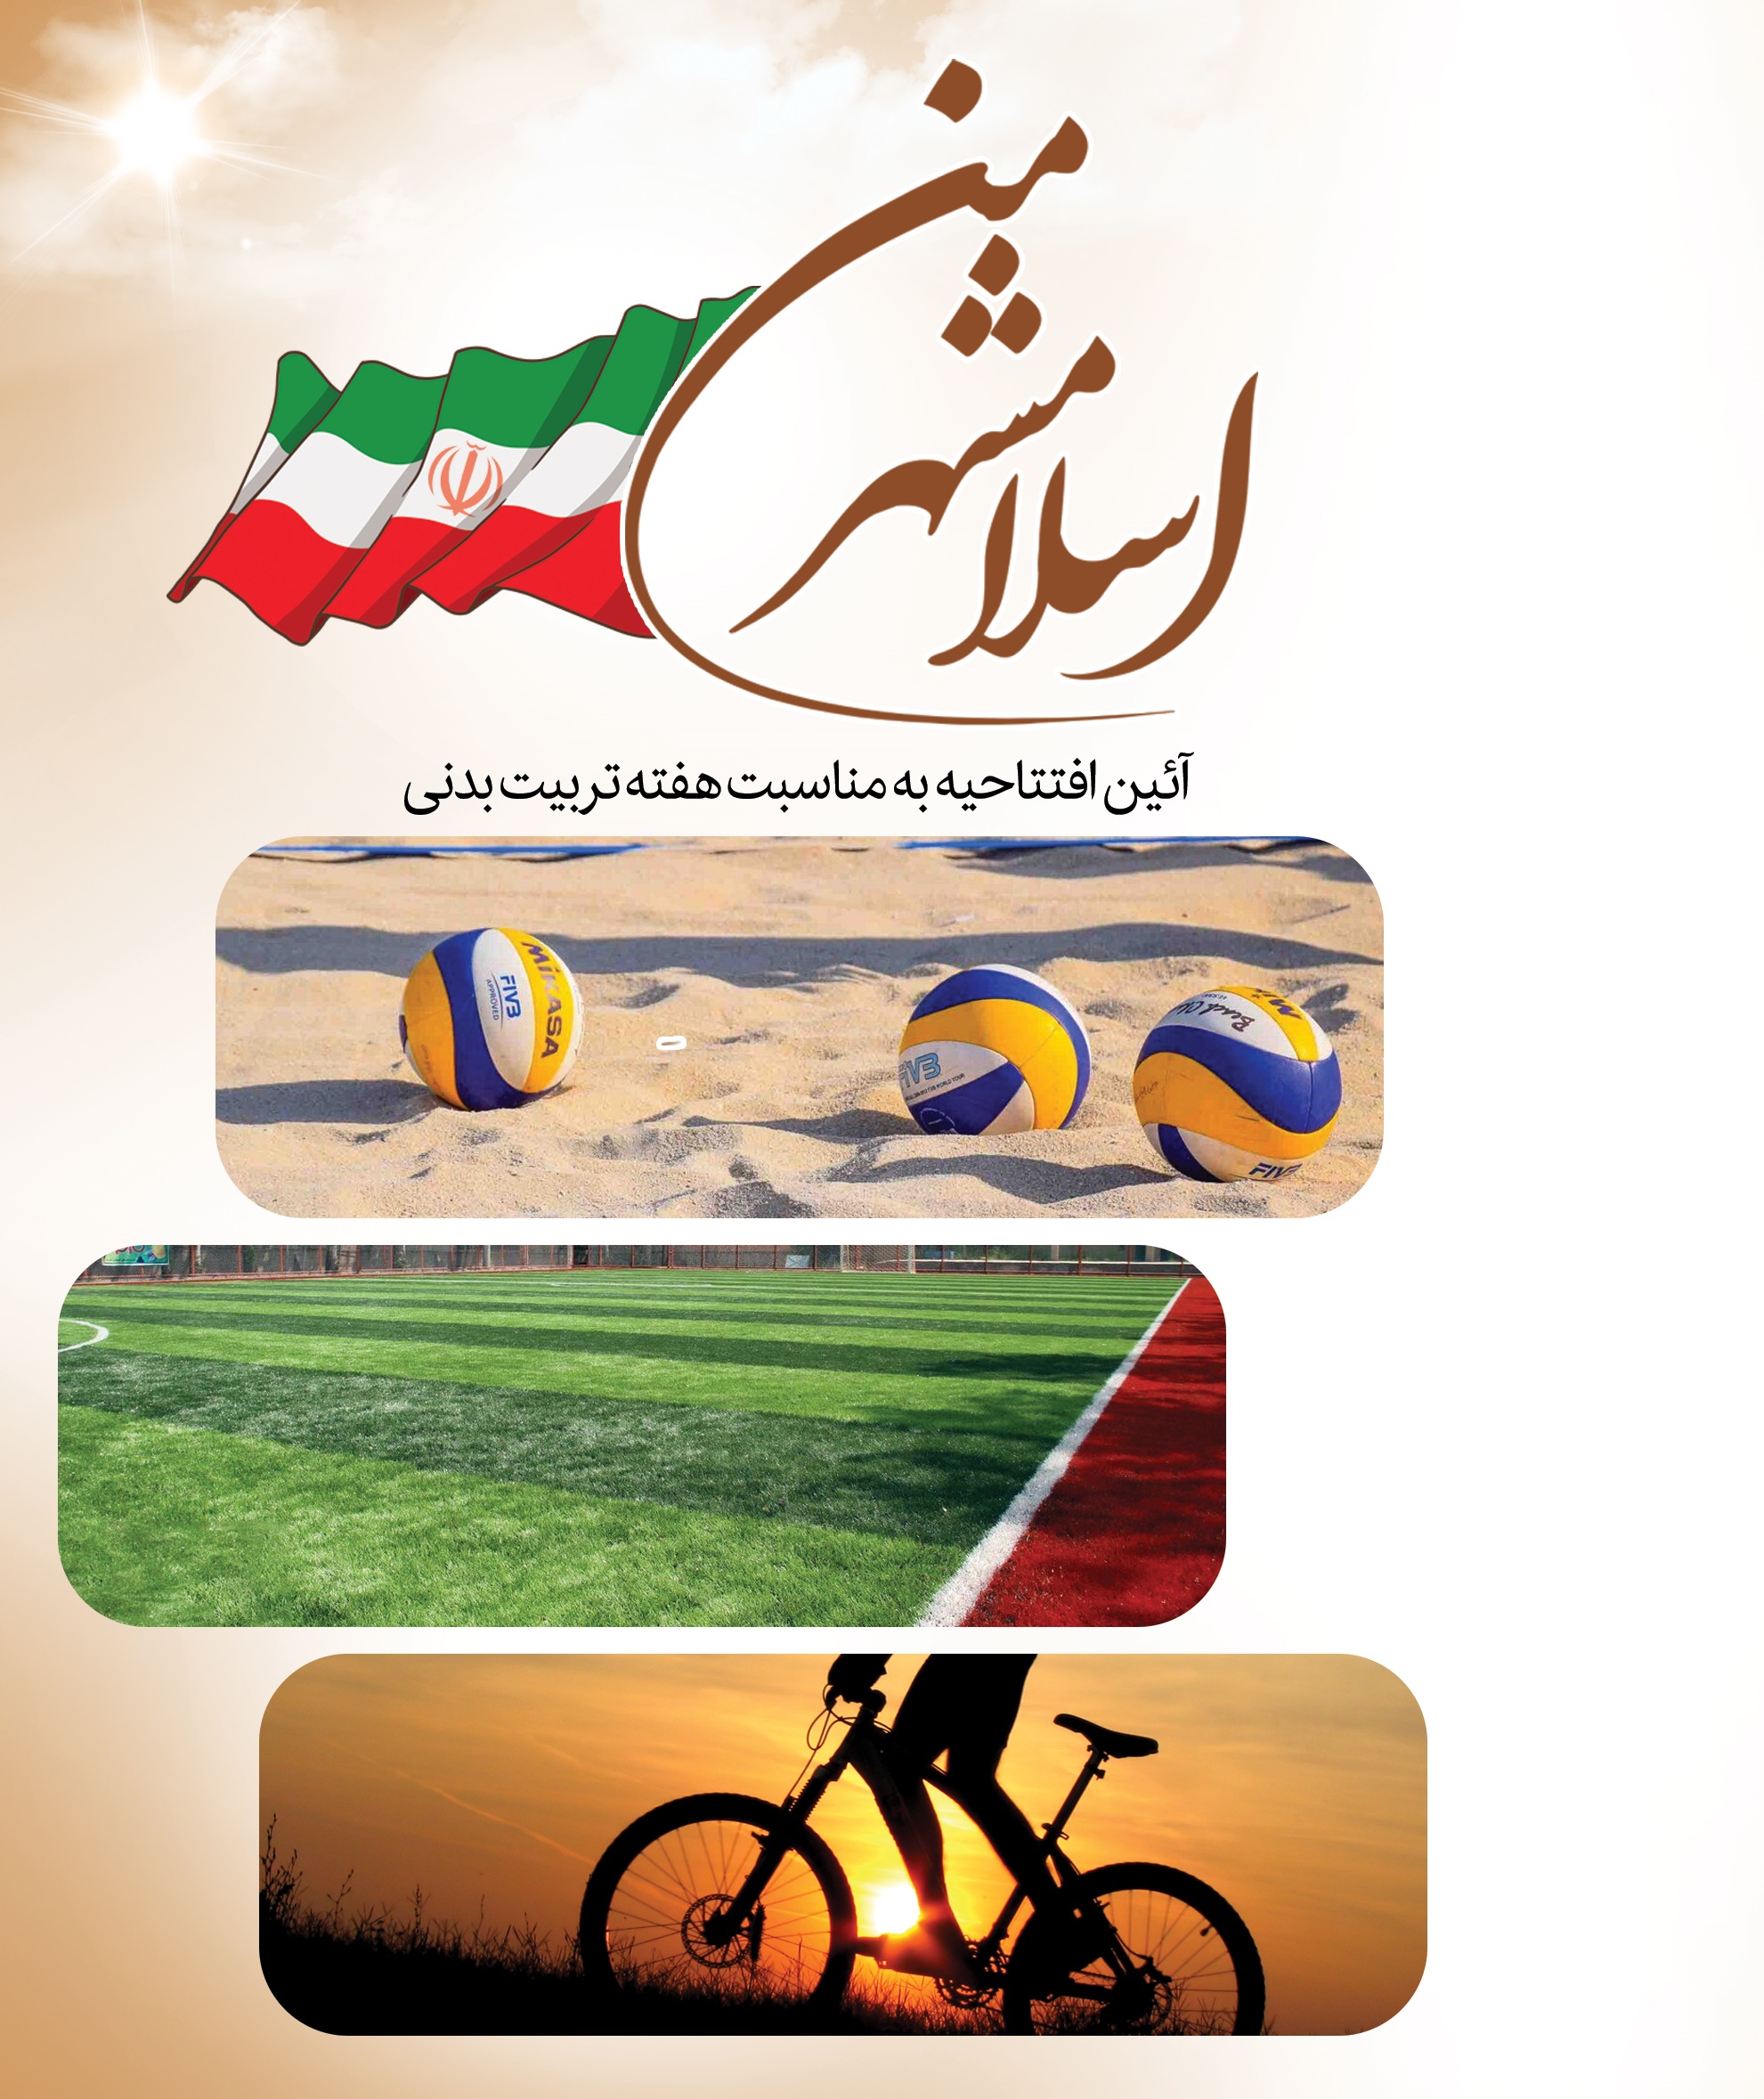 کارخوب شهرداری اسلامشهر به مناسبت فرارسیدن هفته تربیت بدنی/  سه قطعه زمین، هدیه شهرداری اسلامشهر به شهروندان جهت توسعه زیرساخت های ورزشی رفاهی